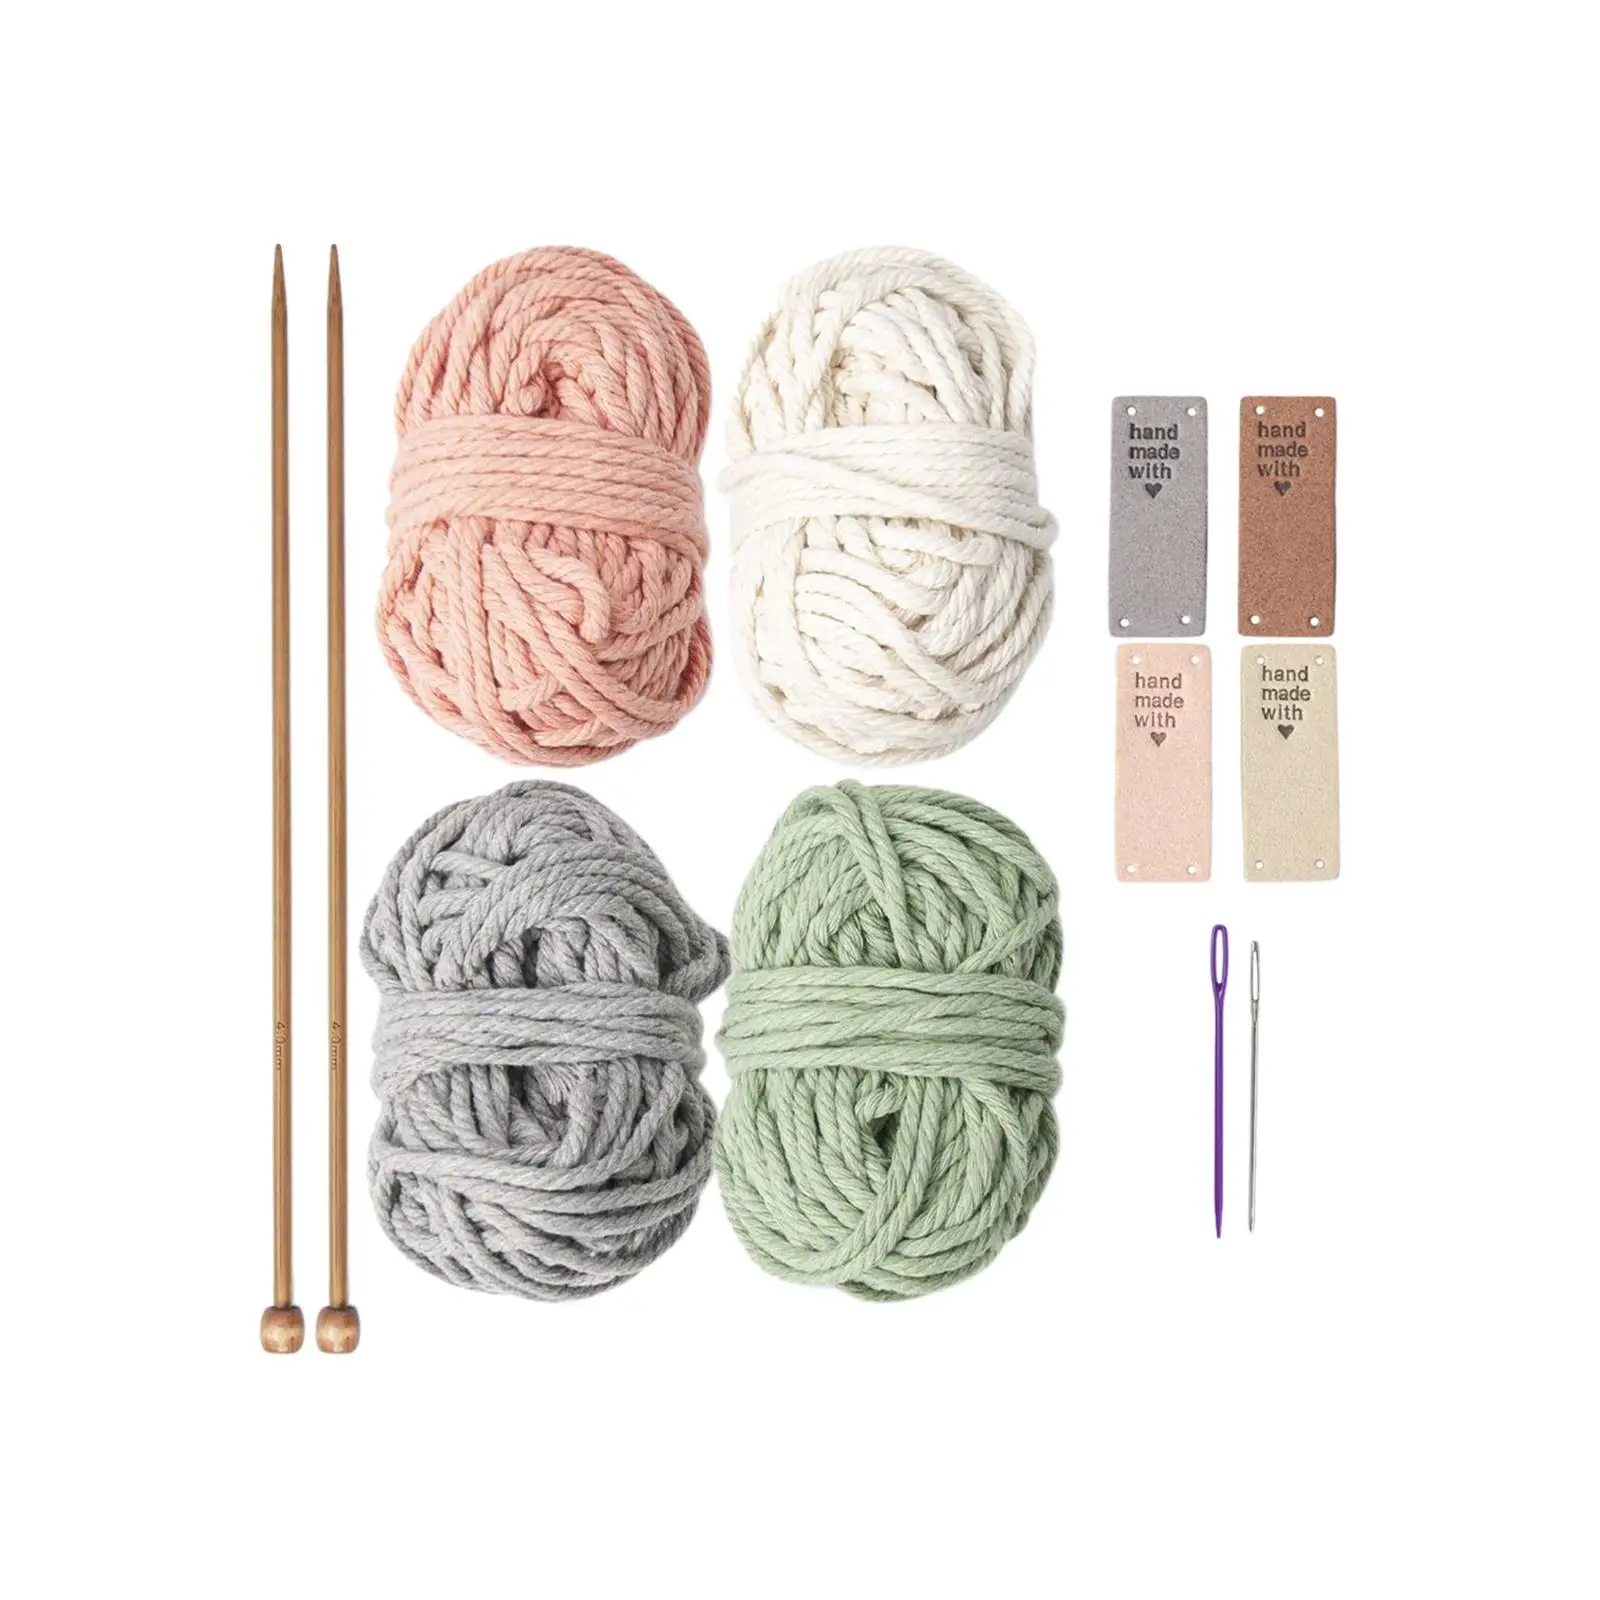 Crochet Kit for Beginners Colorful Crochet Coaster for Starter Children